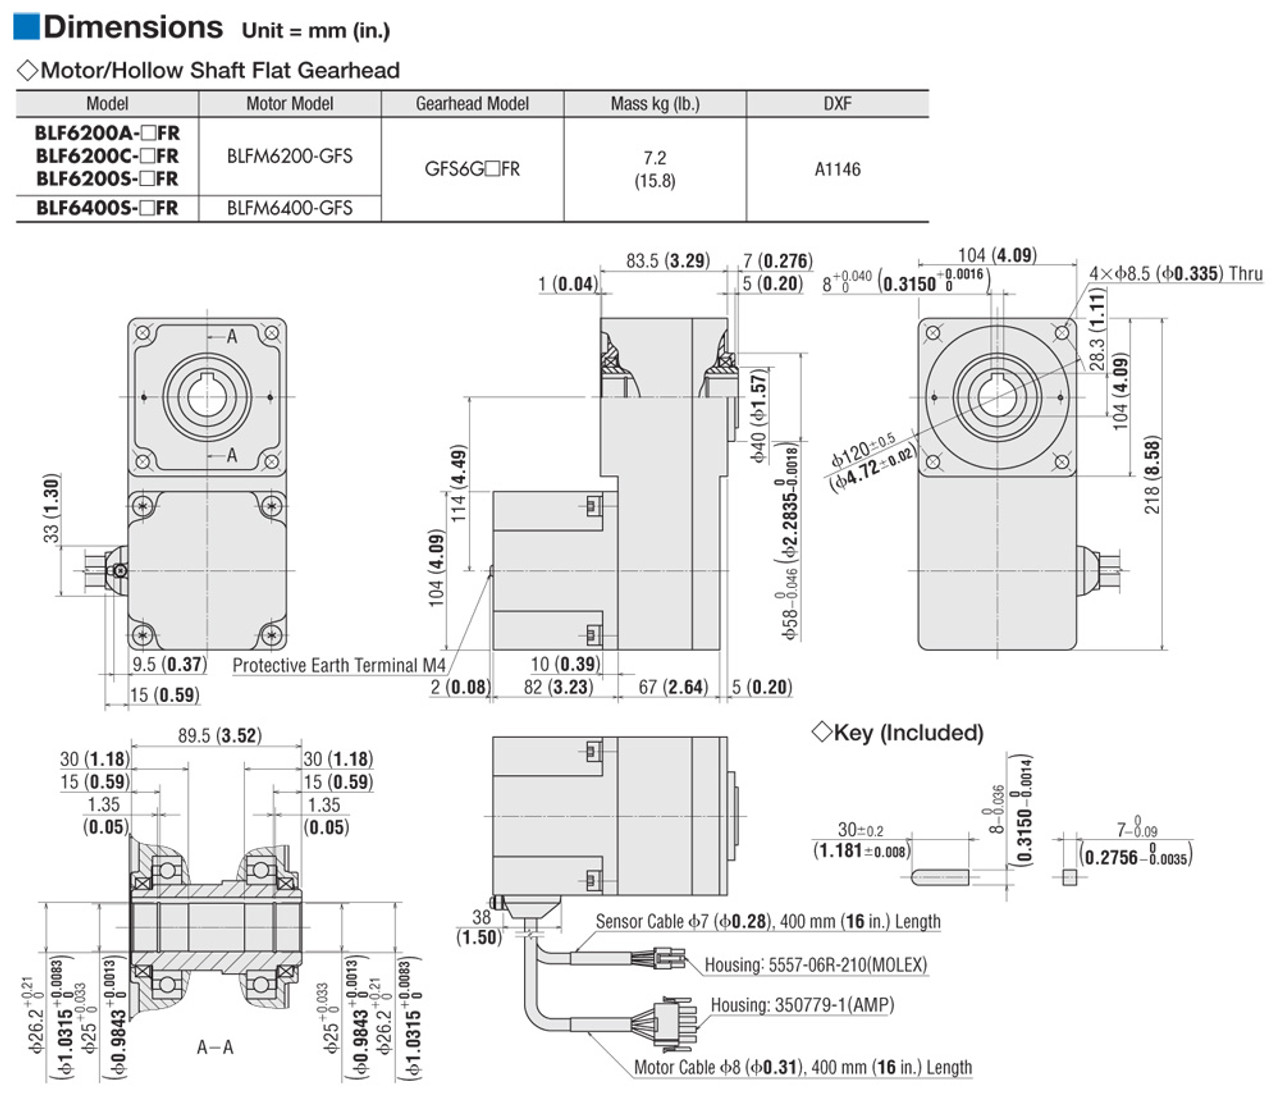 BLFM6400-GFS / GFS6G5FR - Dimensions